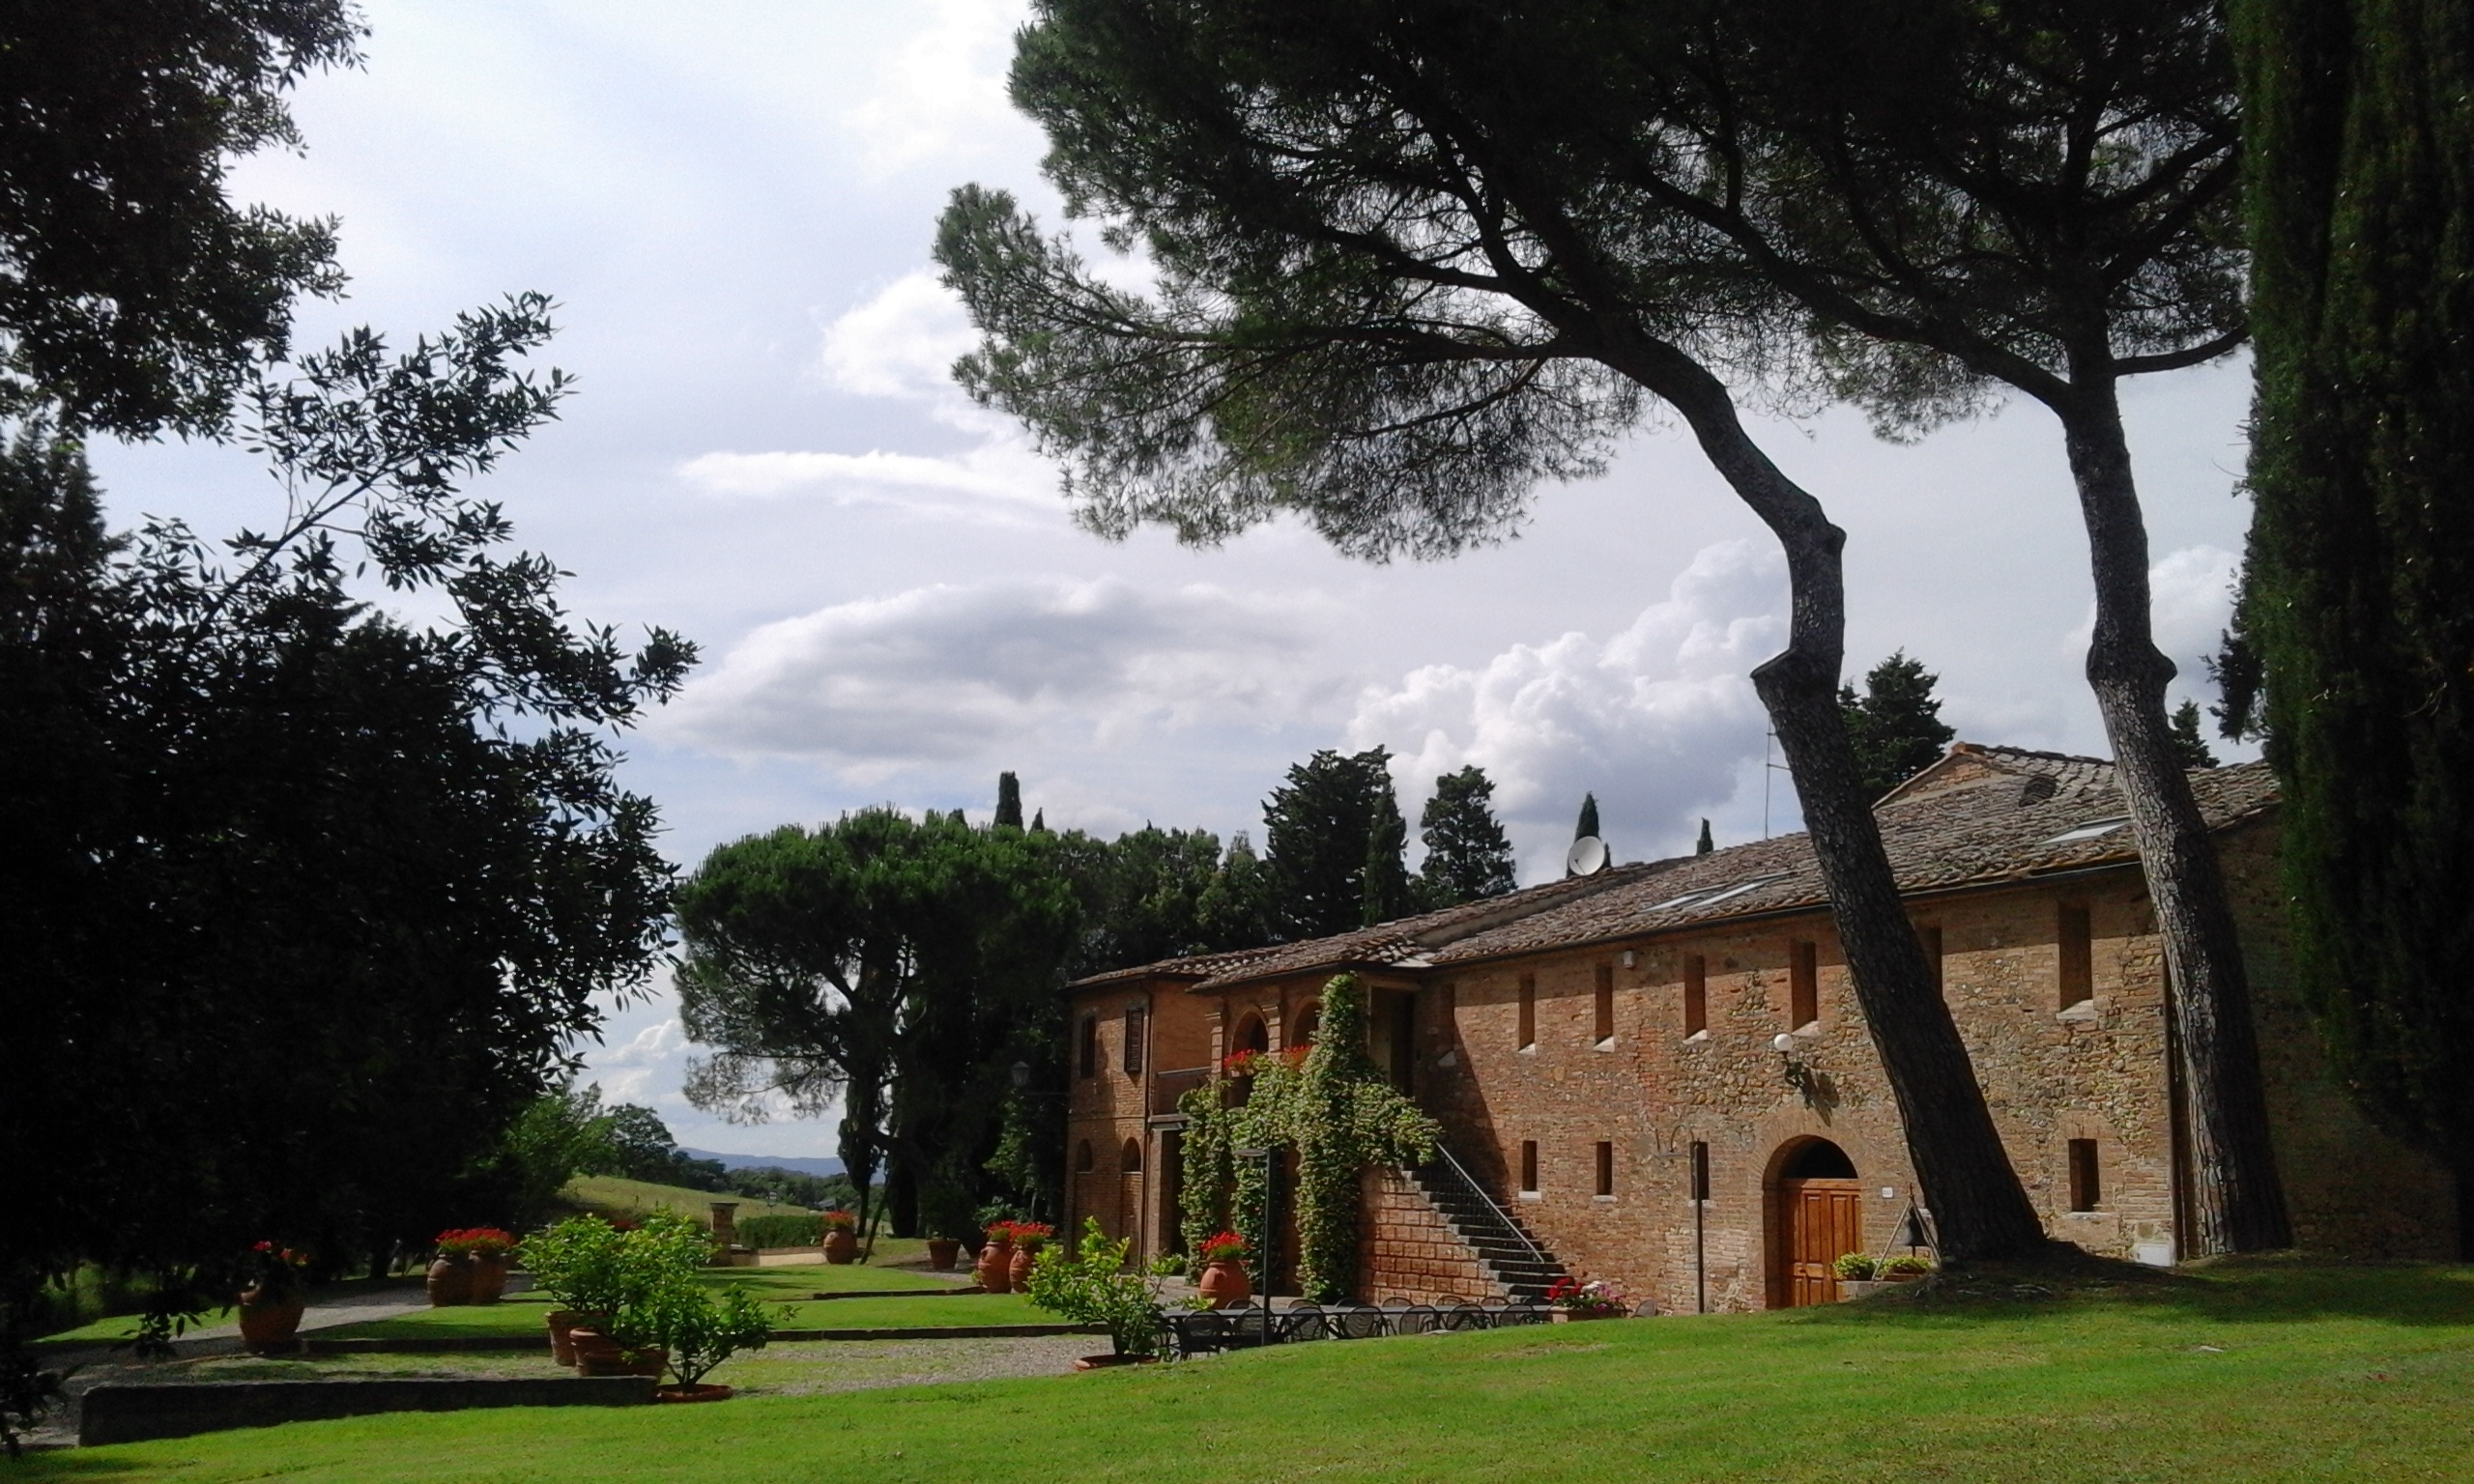 La tenuta di Suvignano, in provincia di Siena, assegnata alla Regione Toscana. Fonte: Toscana Notizie